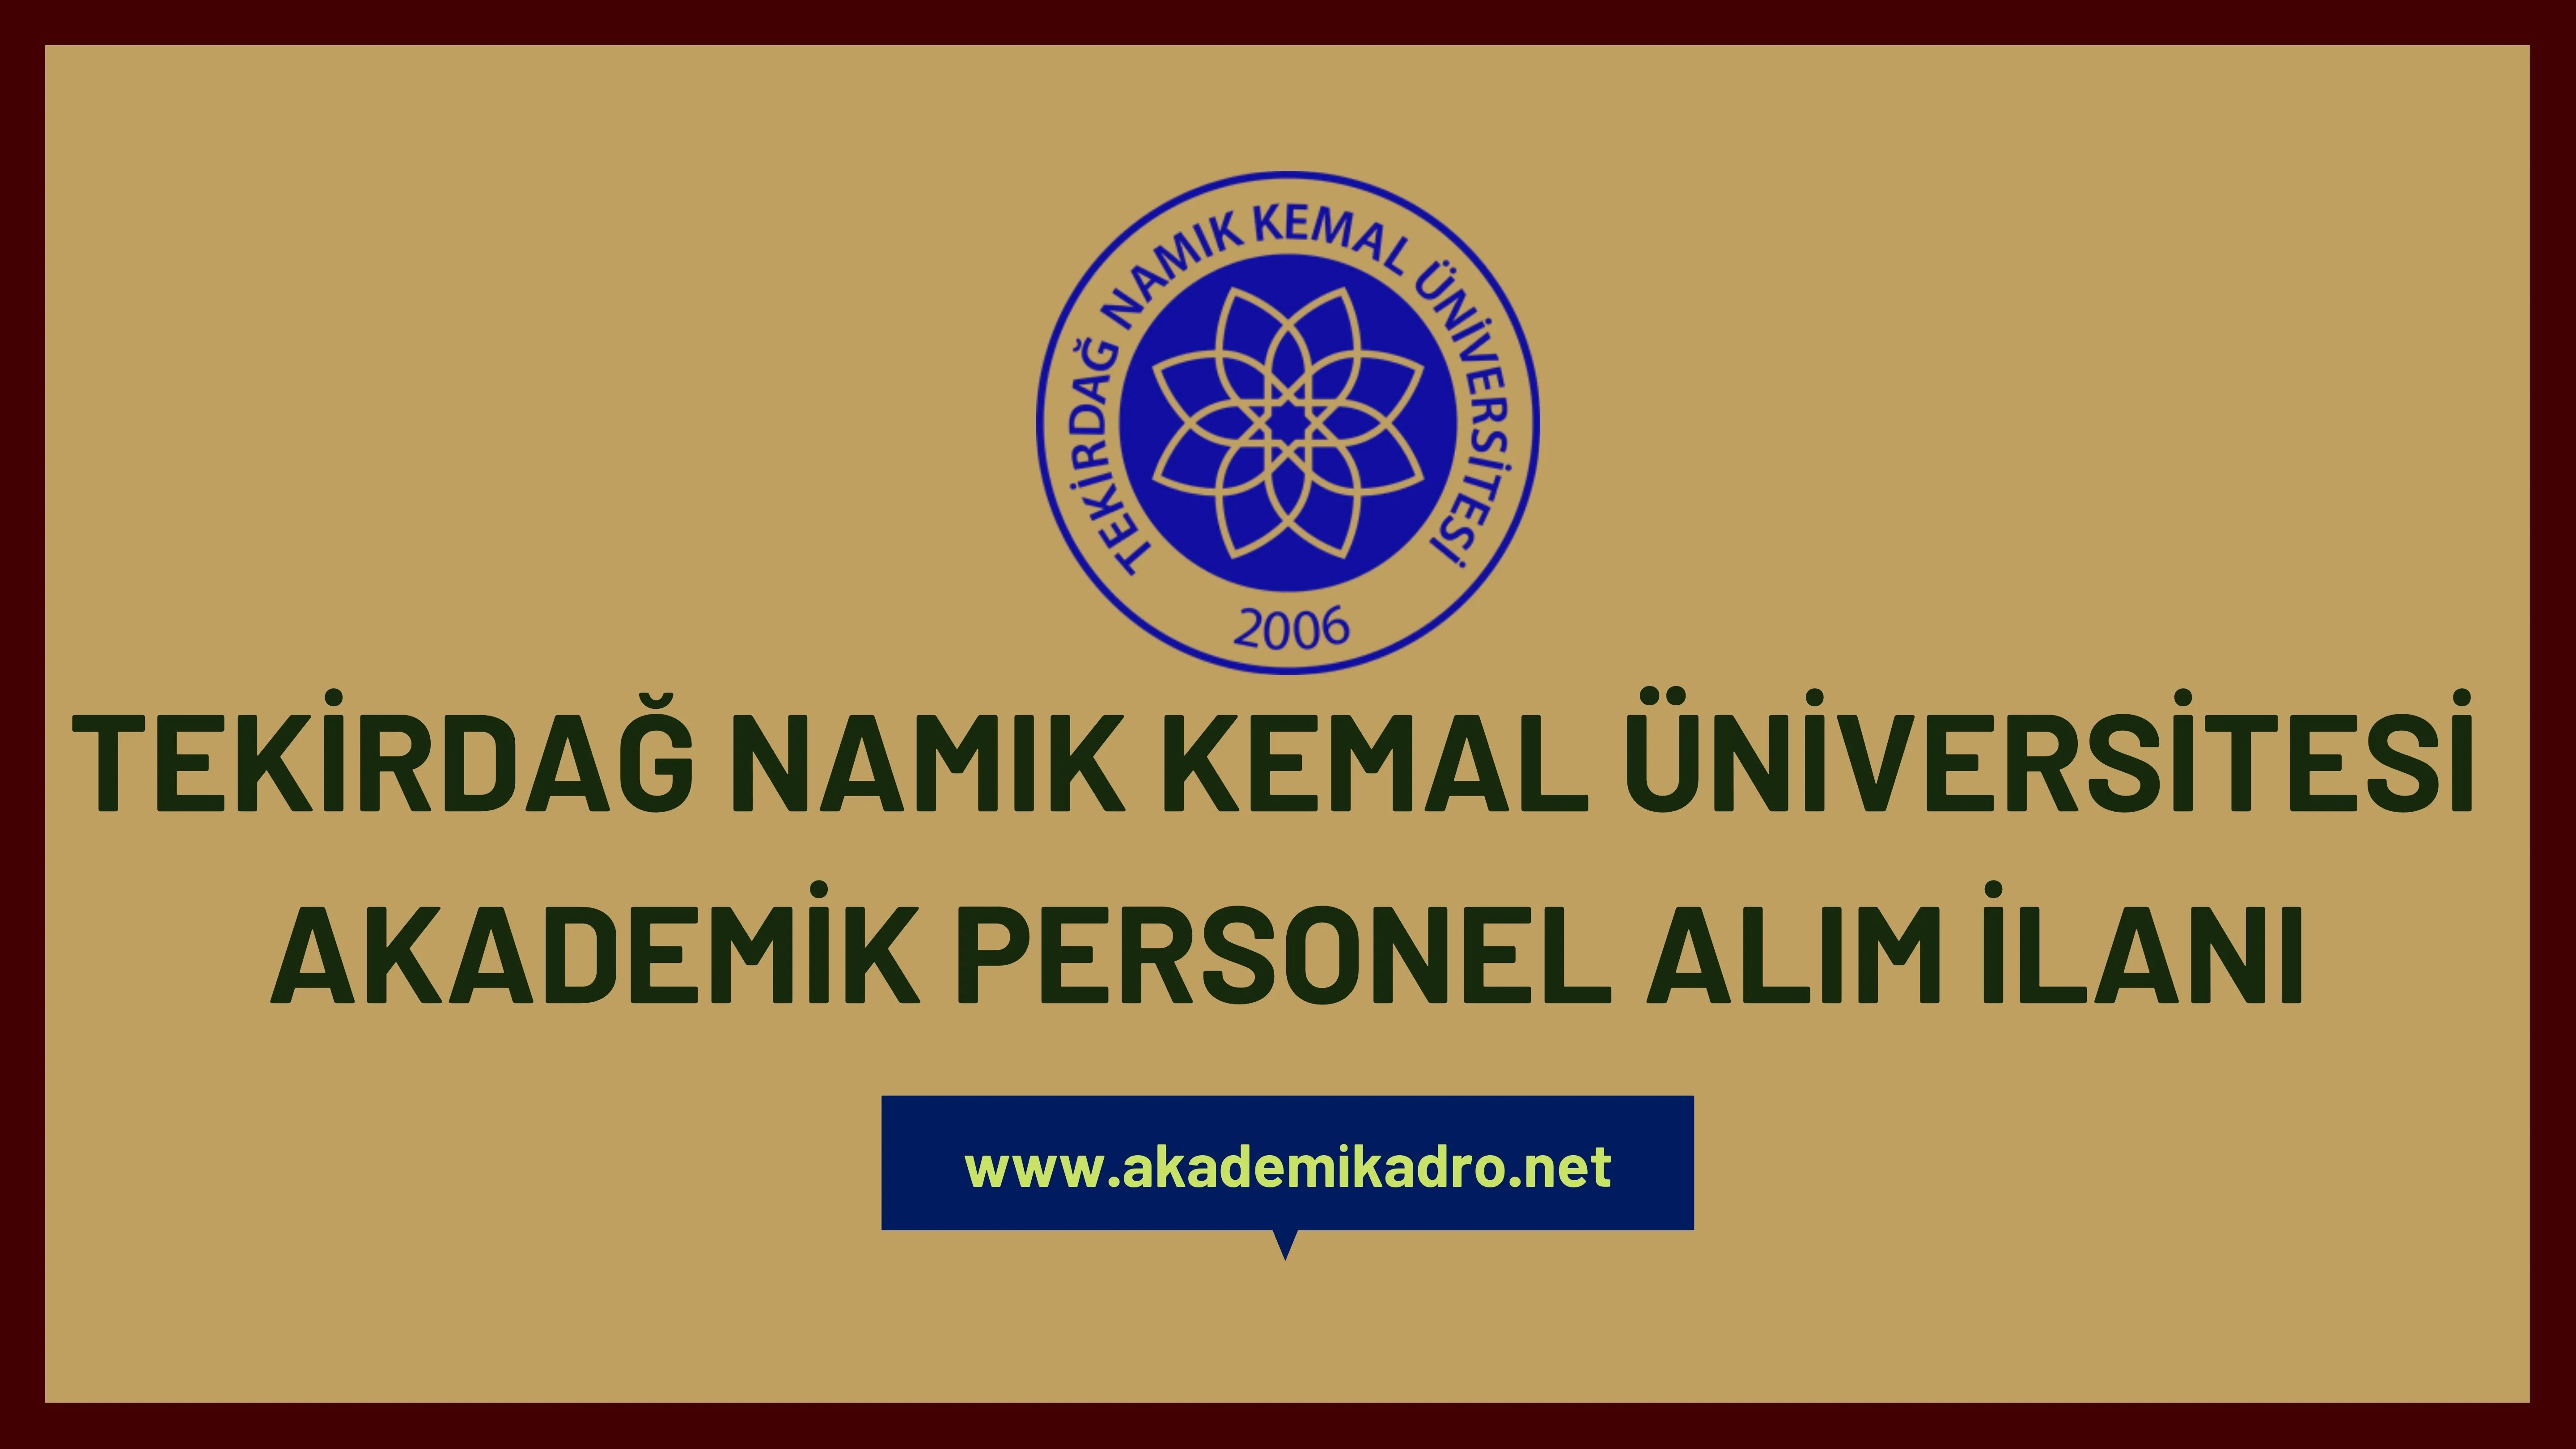 Tekirdağ Namık Kemal Üniversitesi 2 akademik personel alacak. Son başvuru tarihi 02 Kasım 2022.